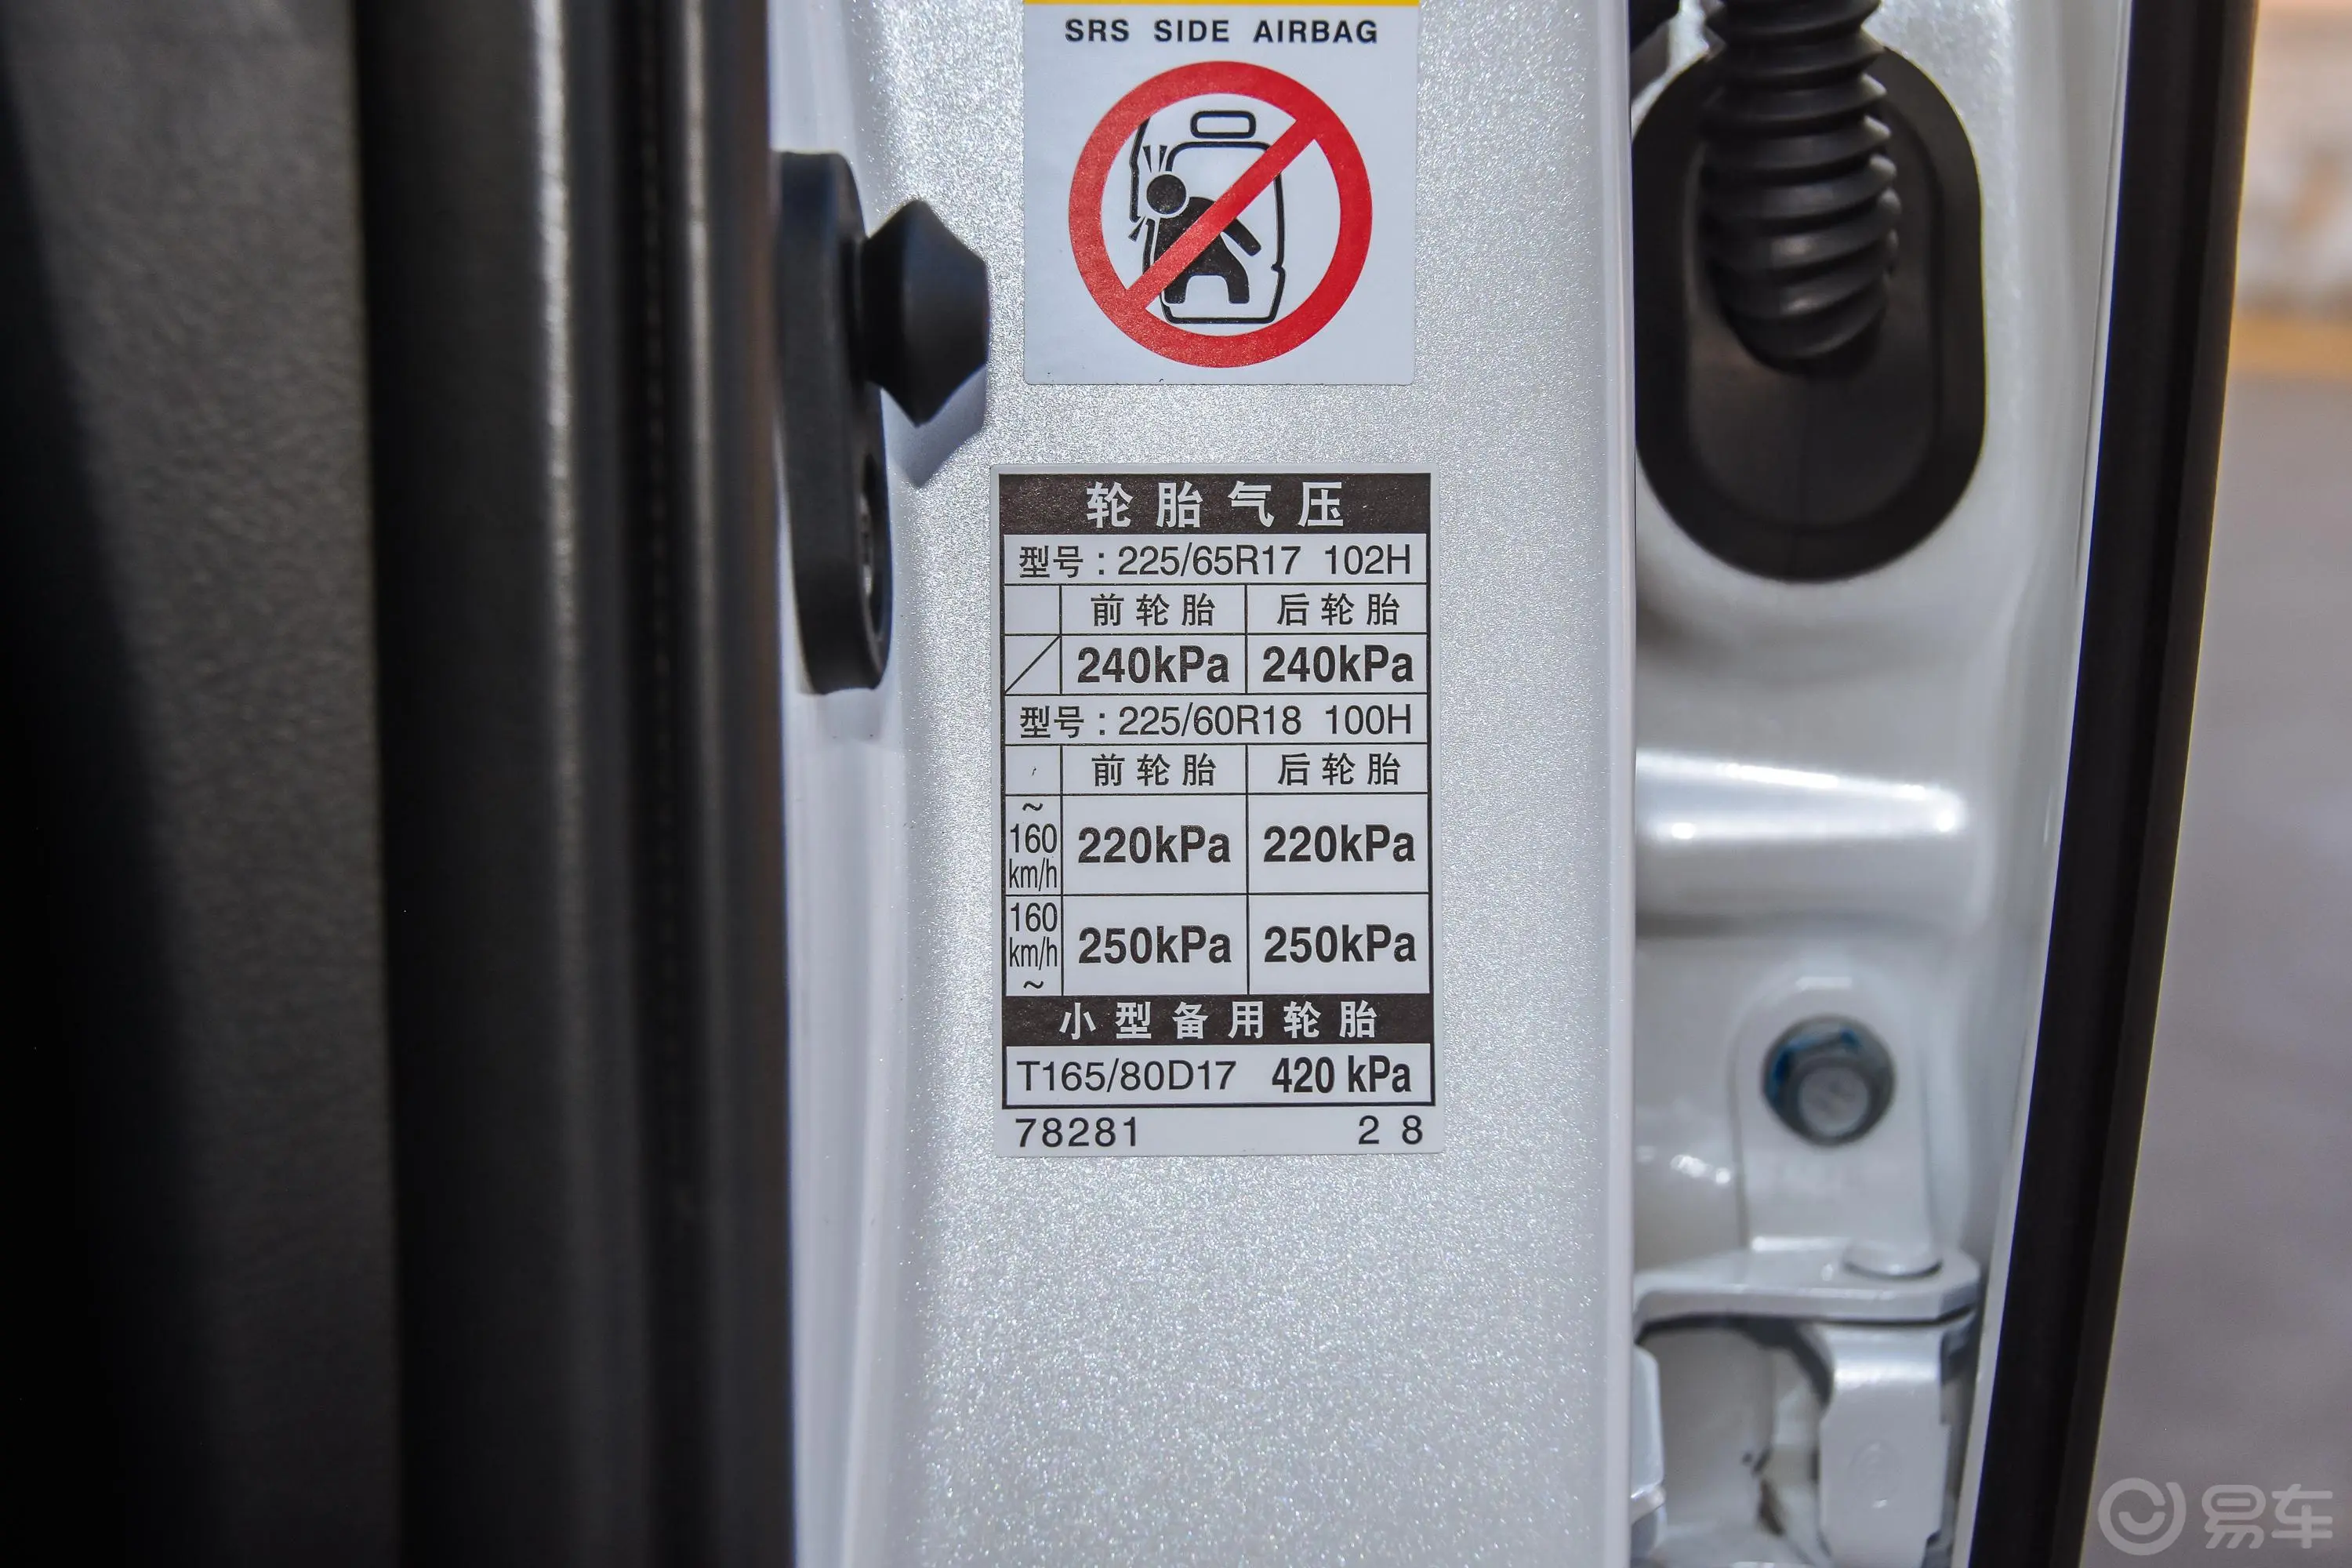 雷克萨斯NXNX 300h 锋致版胎压信息铭牌